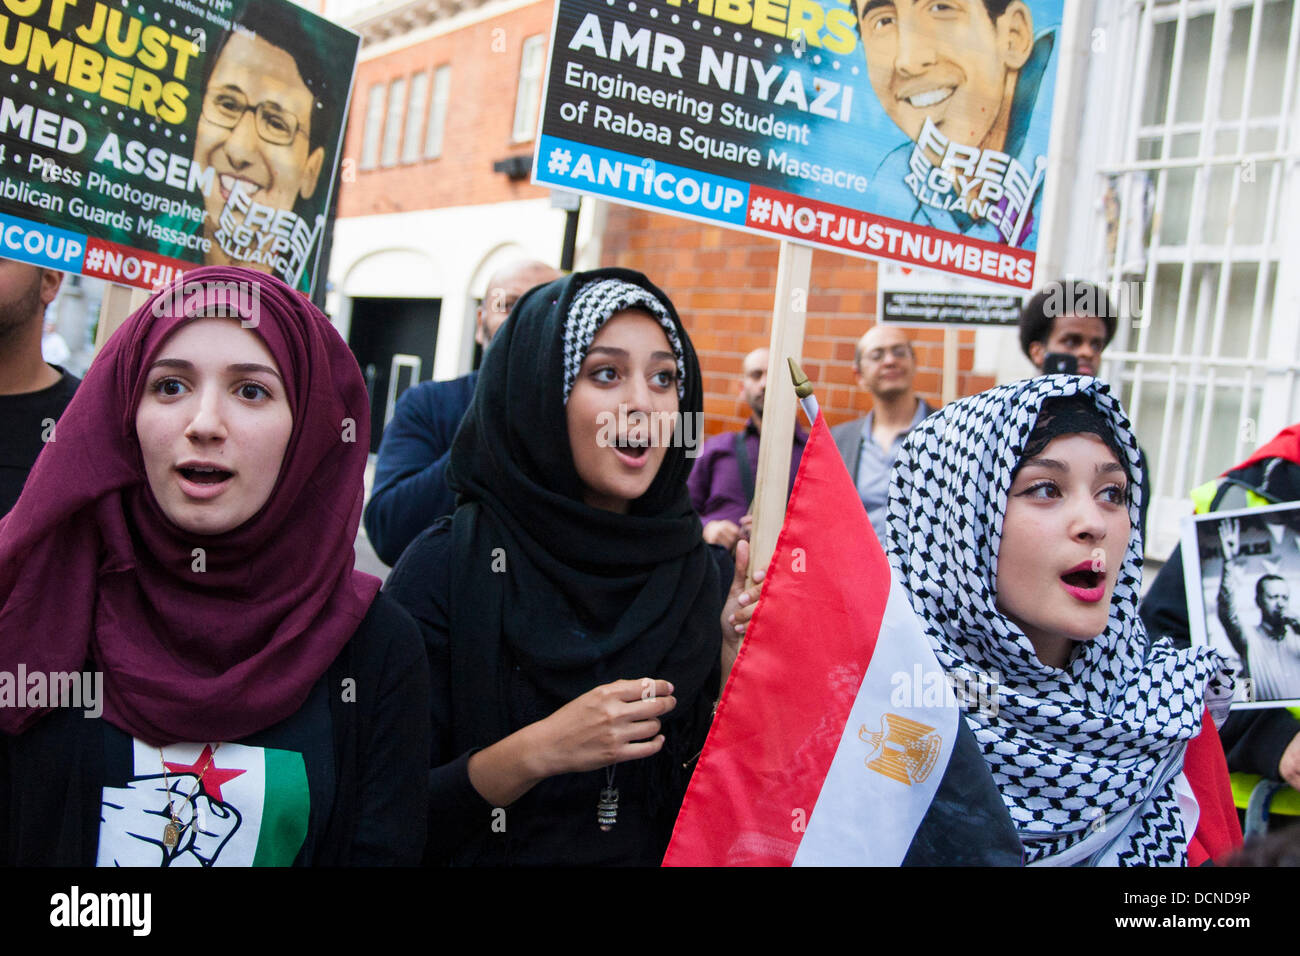 Londres, 20-08-2013. Le chant des femmes en dehors des slogans l'ambassade d'Egypte dans le cadre des manifestations contre l'occupation militaire de l'ancien président Morsi, élu démocratiquement. Banque D'Images